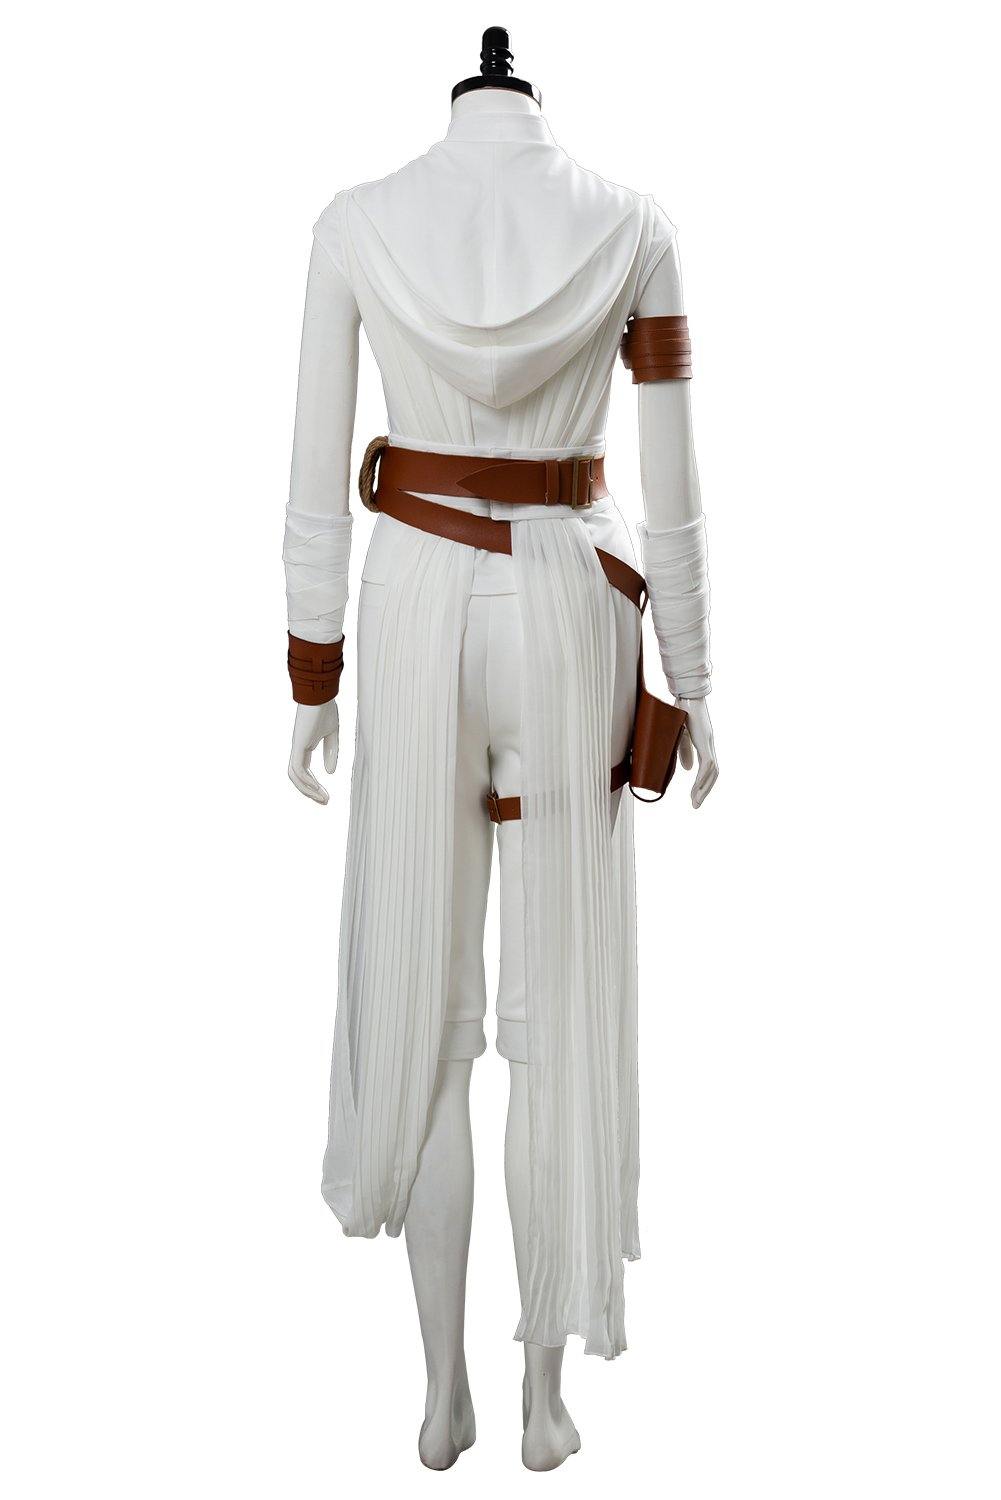 Star Wars 9 The Rise of Skywalker Teaser Der Aufstieg Skywalkers Rey Cosplay Kostüm Version B - cosplaycartde